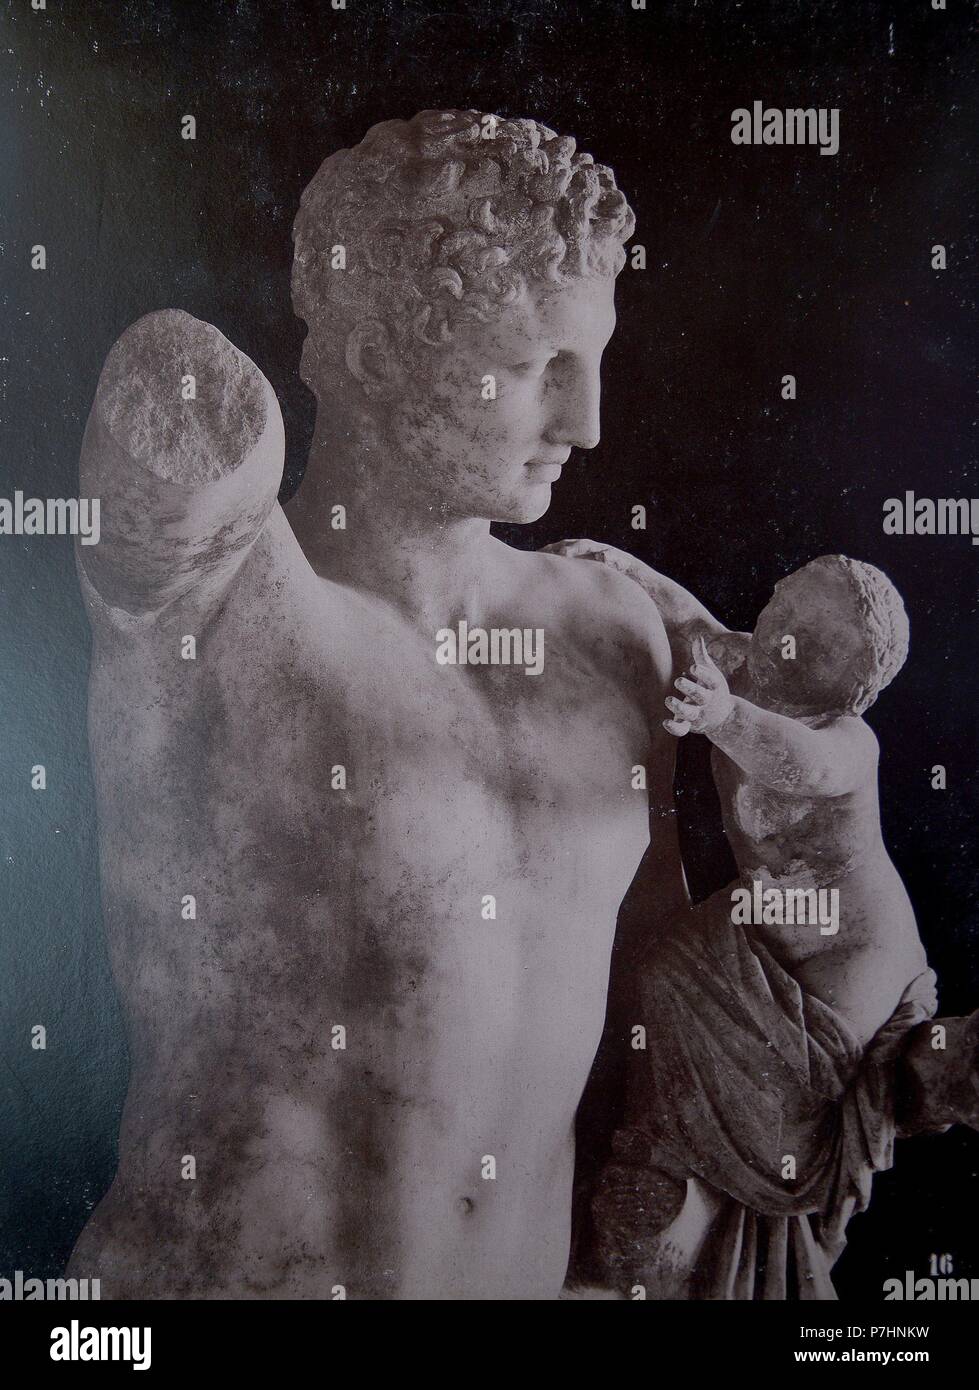 [Detalle de Hermes con Dioniso niño, de Praxíteles]. Stock Photo